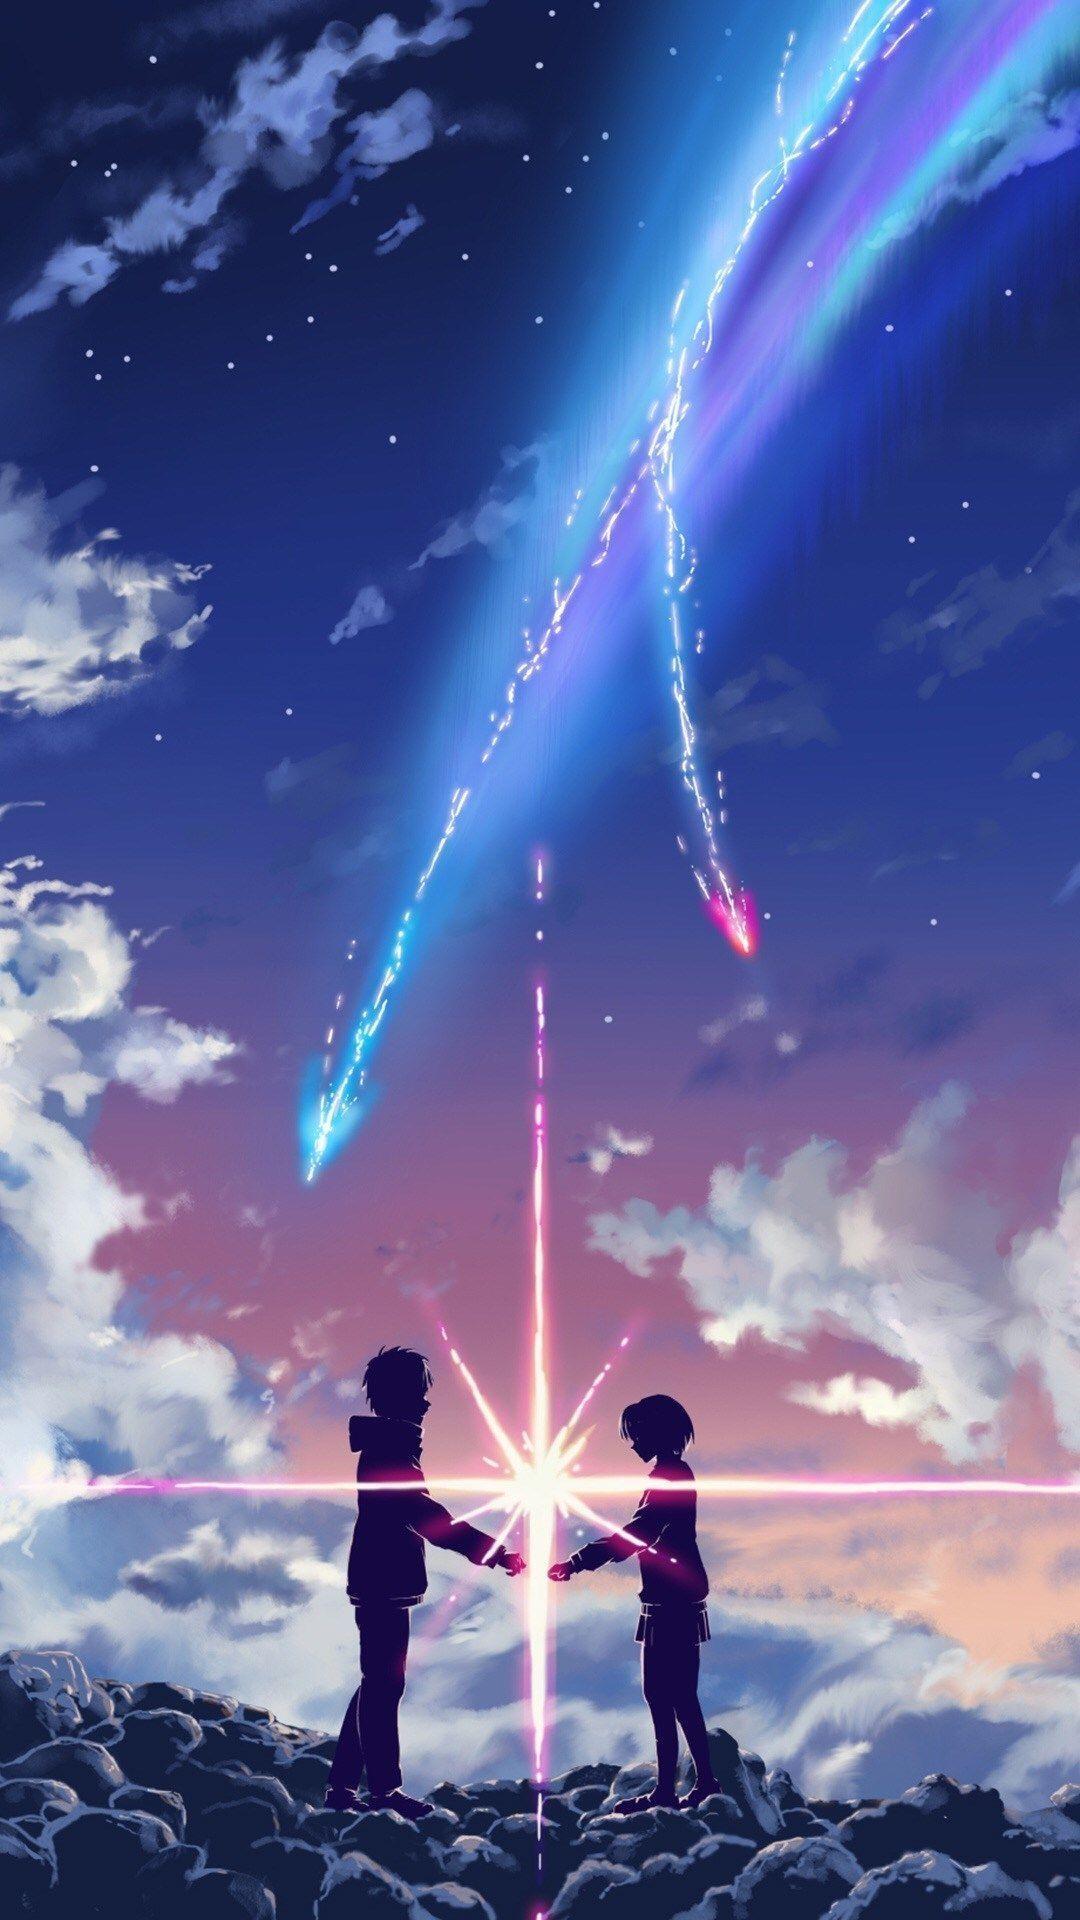 Tông màu neon sặc sỡ và phóng khoáng là một xu hướng rất hot trong thế giới anime hiện đại. Hãy cùng thưởng thức những bức ảnh đầy sinh động với tông màu neon đang hot trend mùa này nhé!